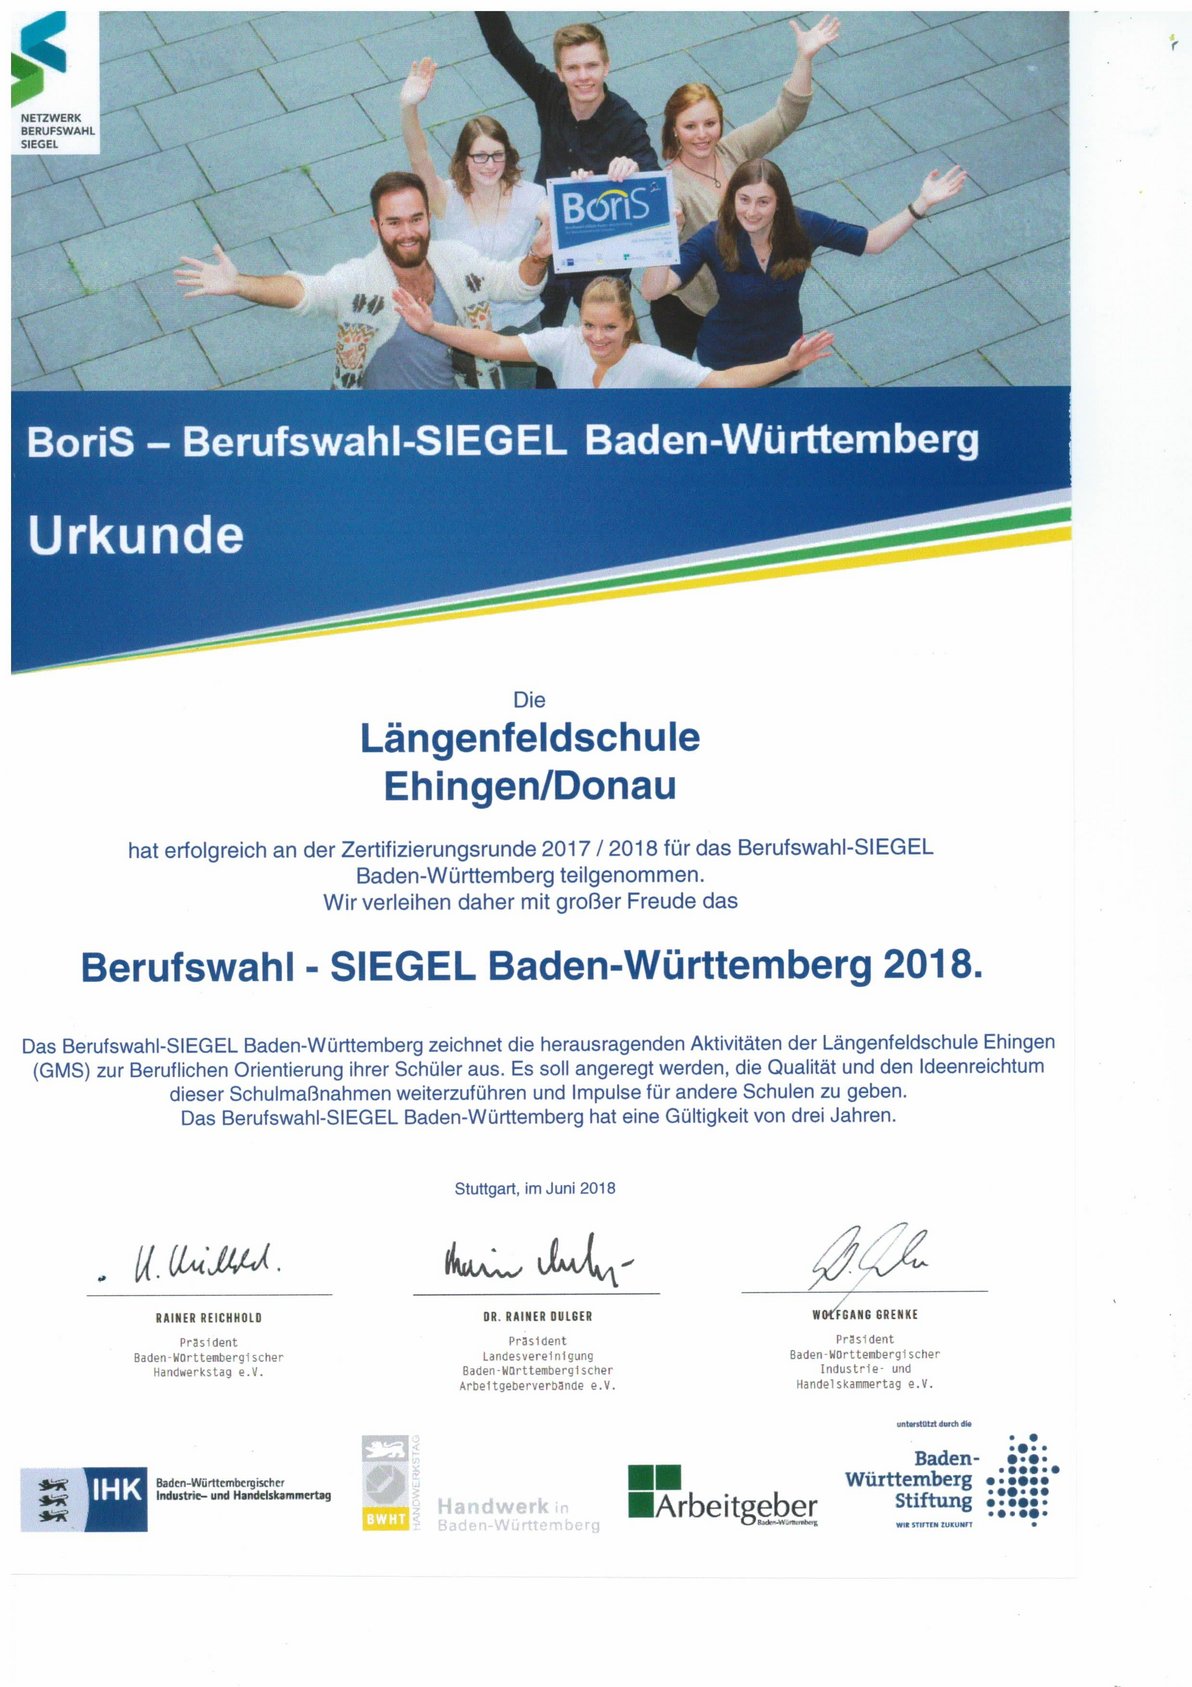 Urkunde  Berufswahl - SIEGEL Baden-Württemberg 2018